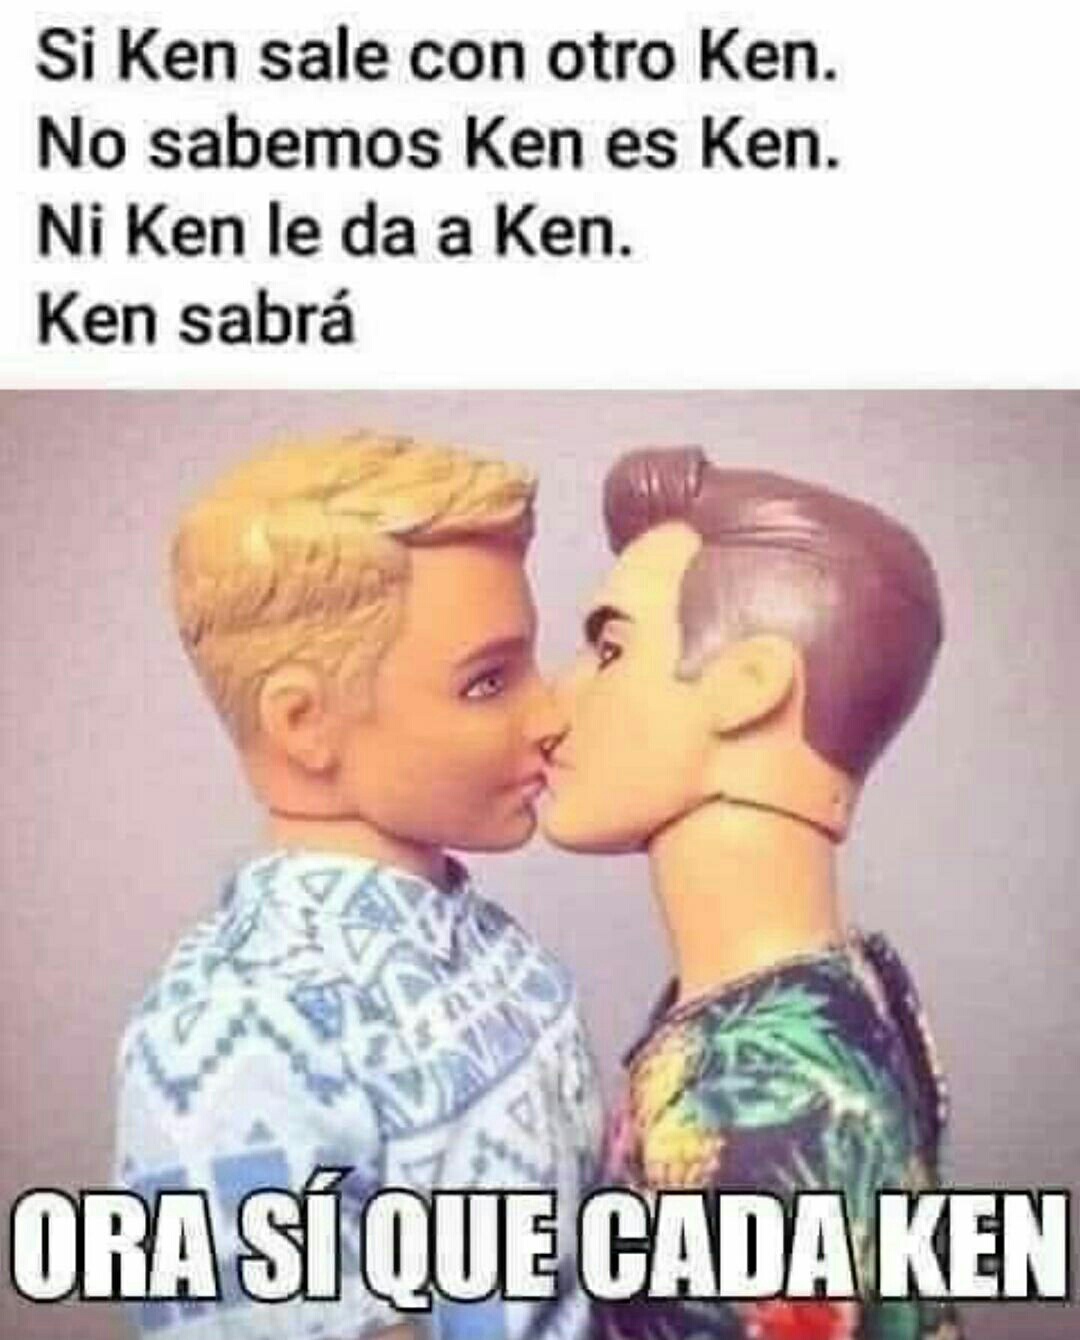 Si Ken sale con otro Ken. No sabemos Ken es Ken. Ni Ken le da a Ken. Ken sabrá. Ora sí que cada Ken.